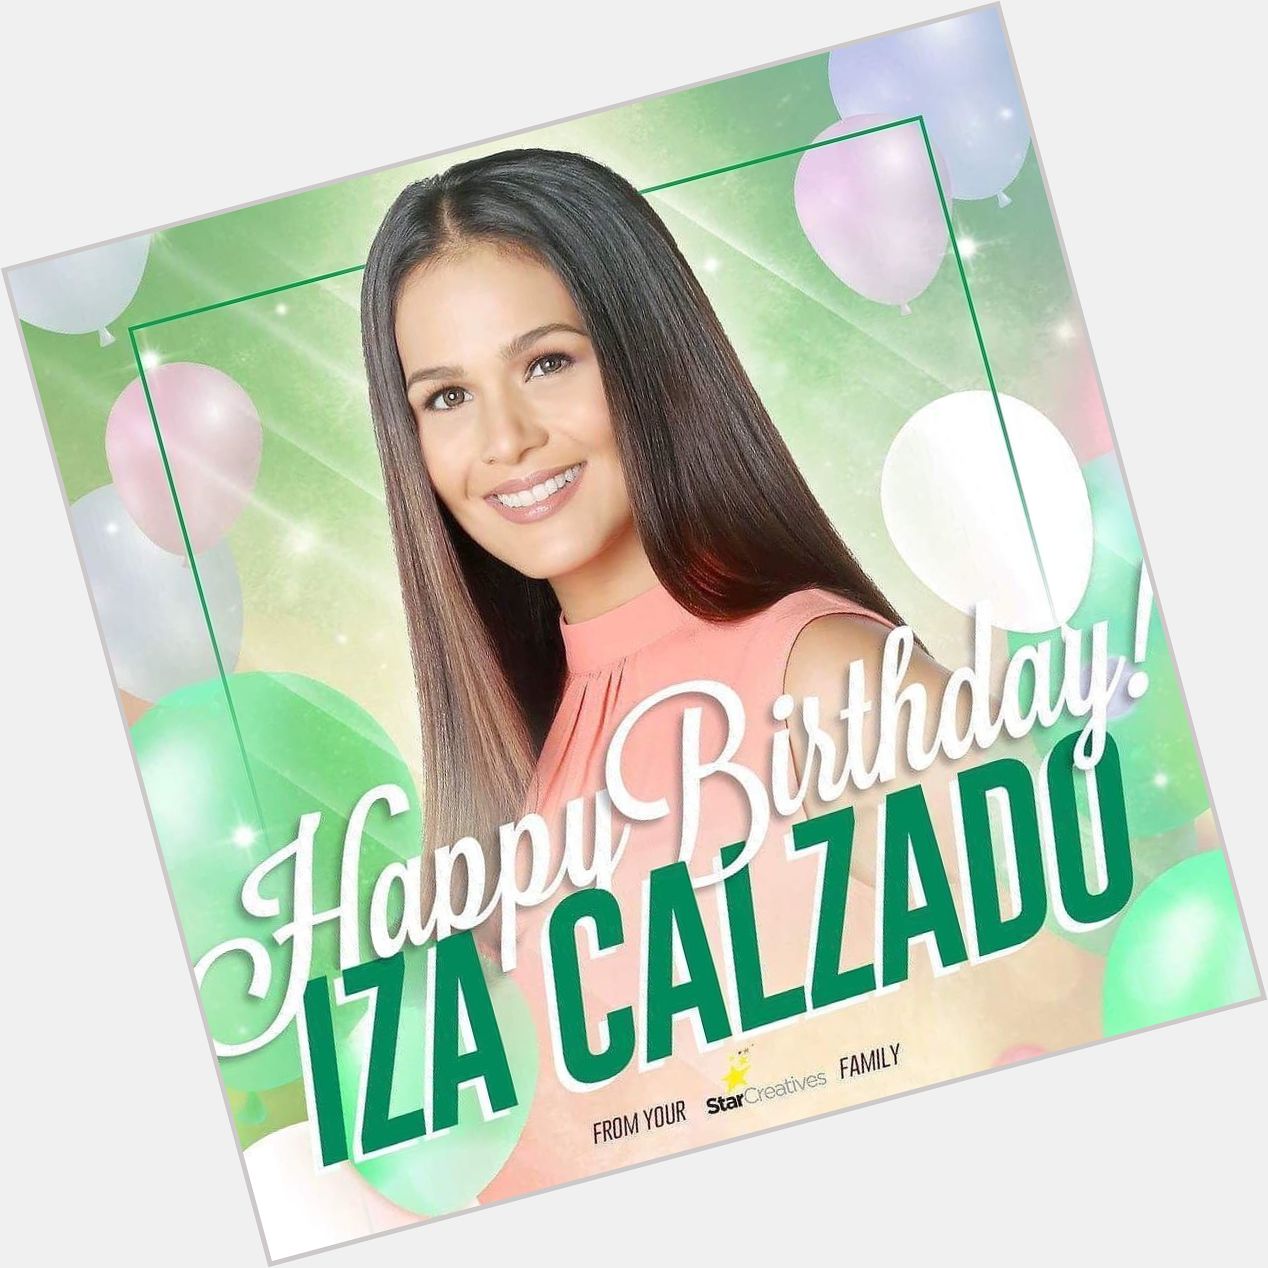 Happy happy birthday to Ms. Iza Calzado! 